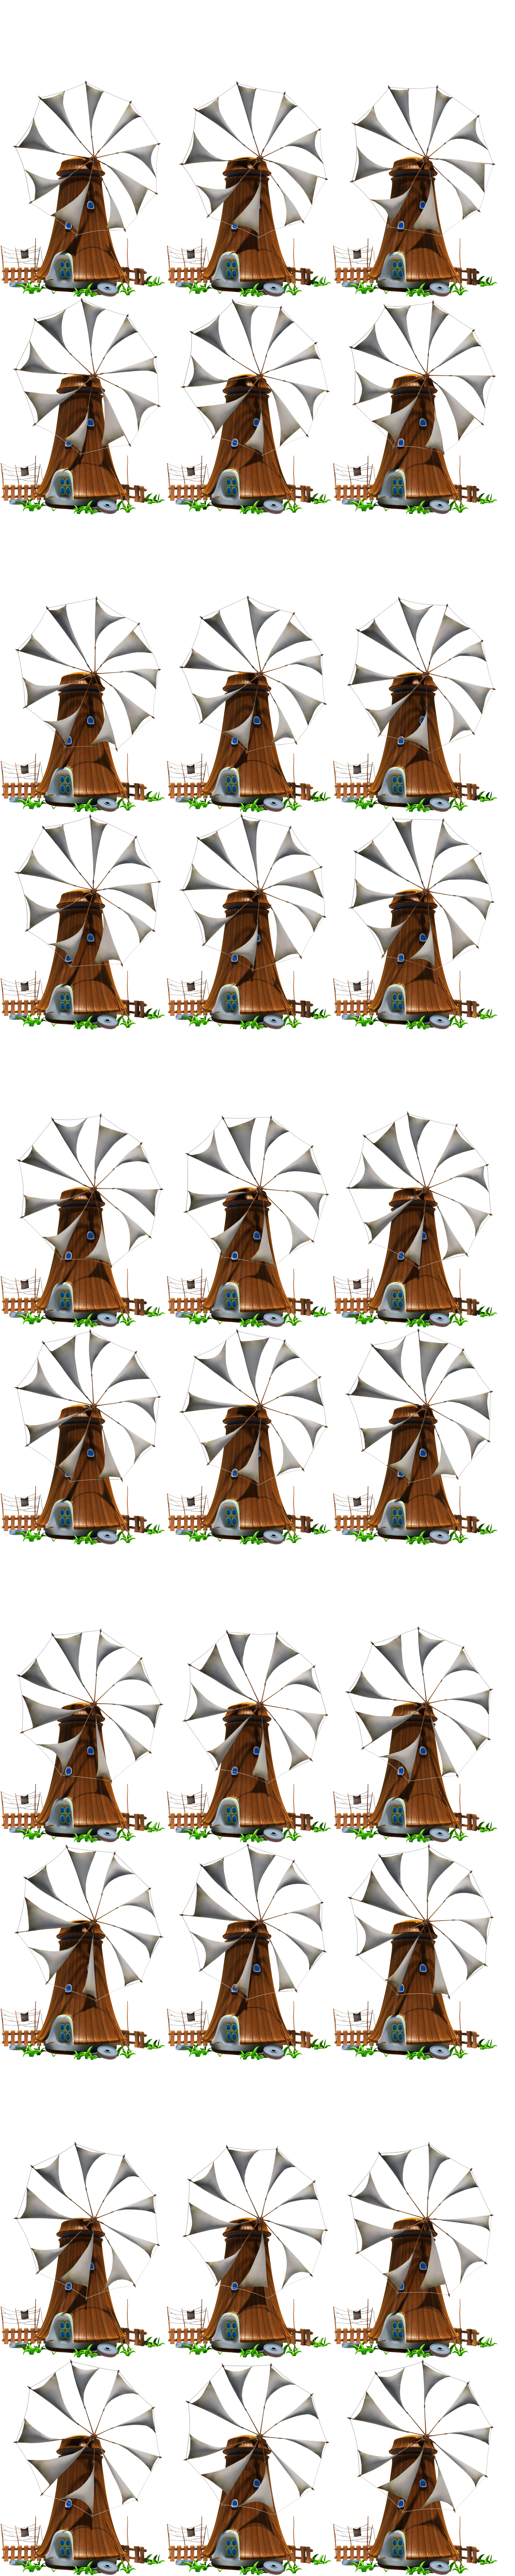 KID PIX 5: The STEAM Edition - Windmill